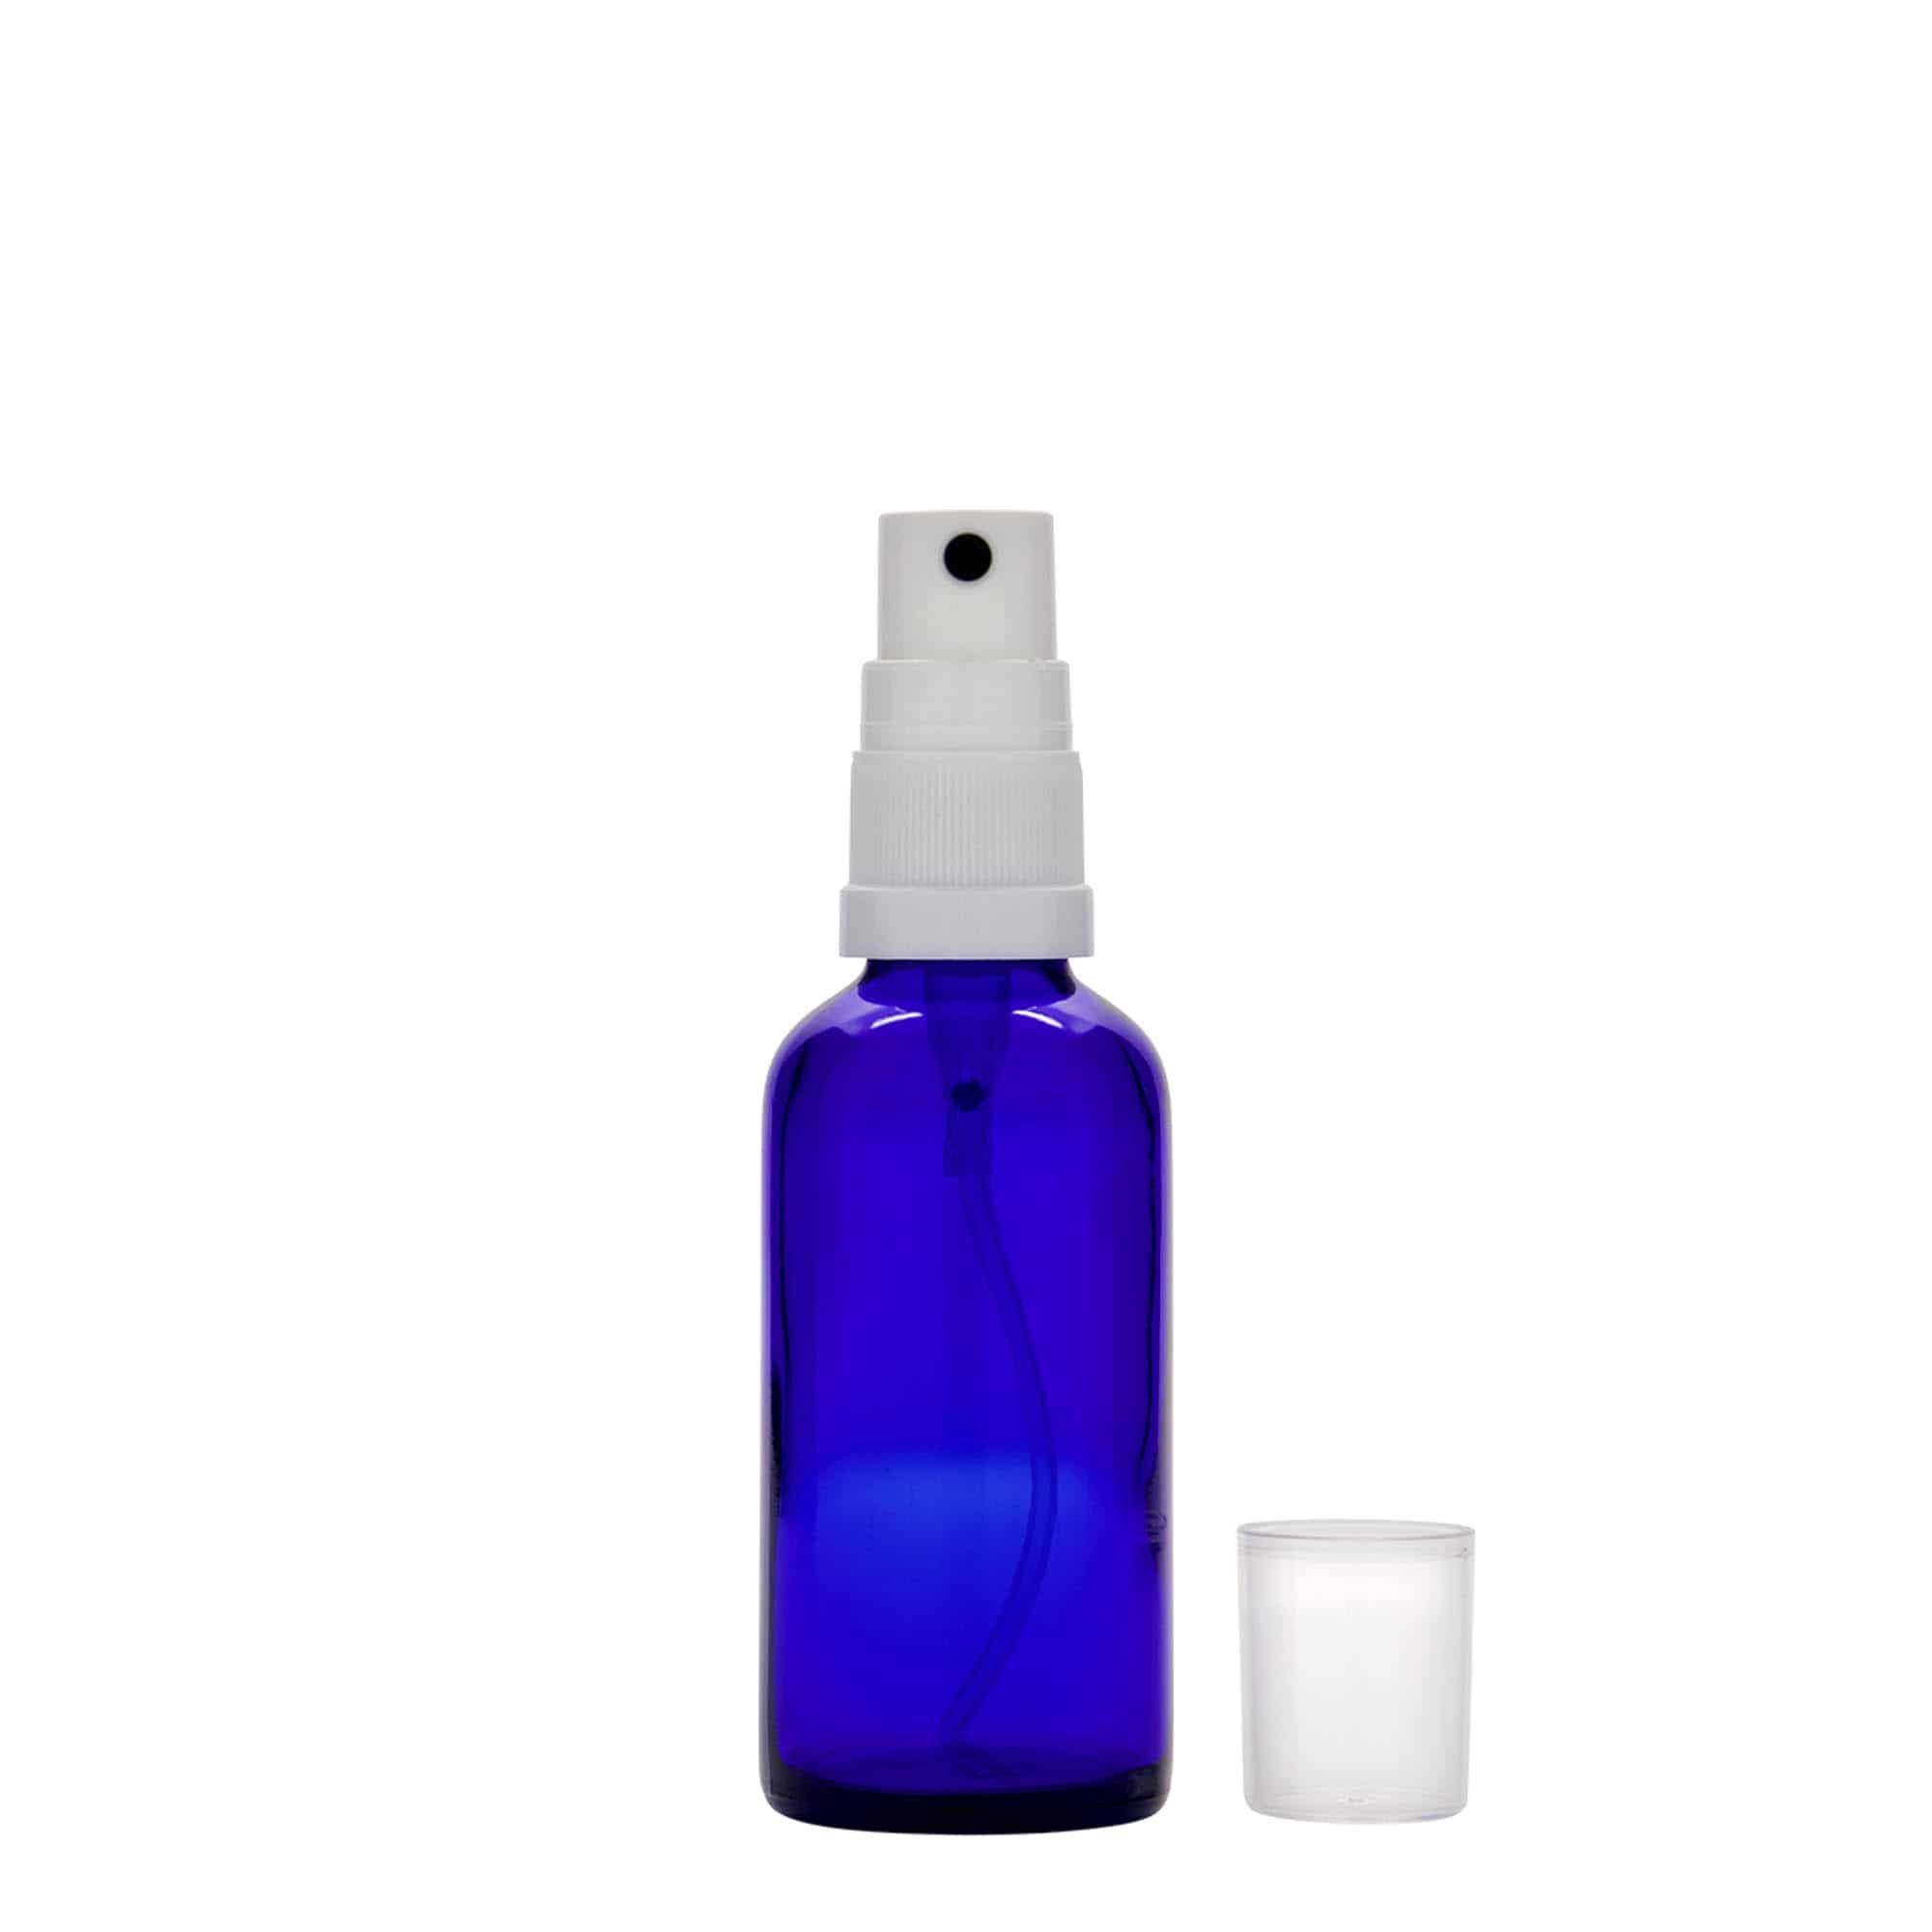 50 ml Flacone spray farmaceutico, vetro, blu reale, imboccatura: DIN 18